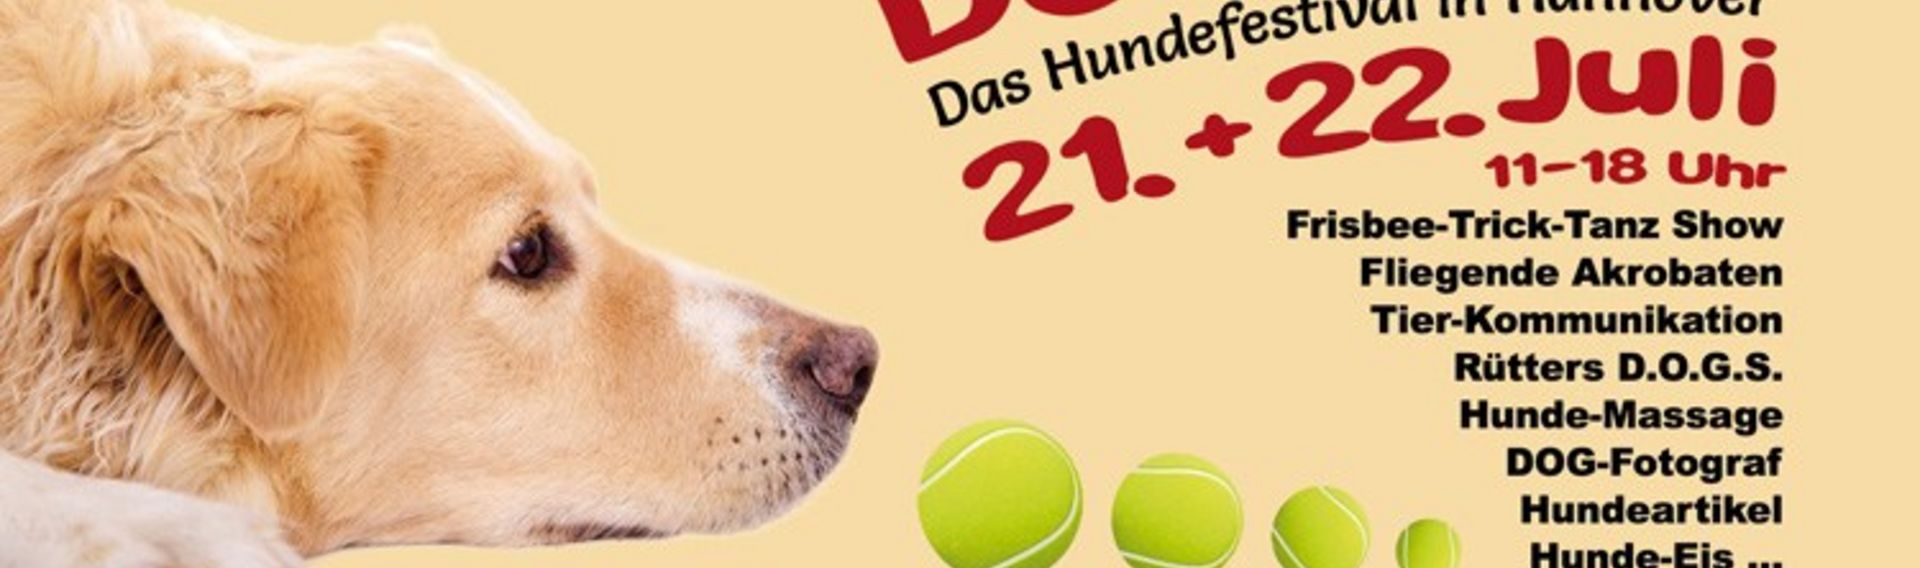 DogDays Hundeveranstaltung Hannover 20.-21.06.2020